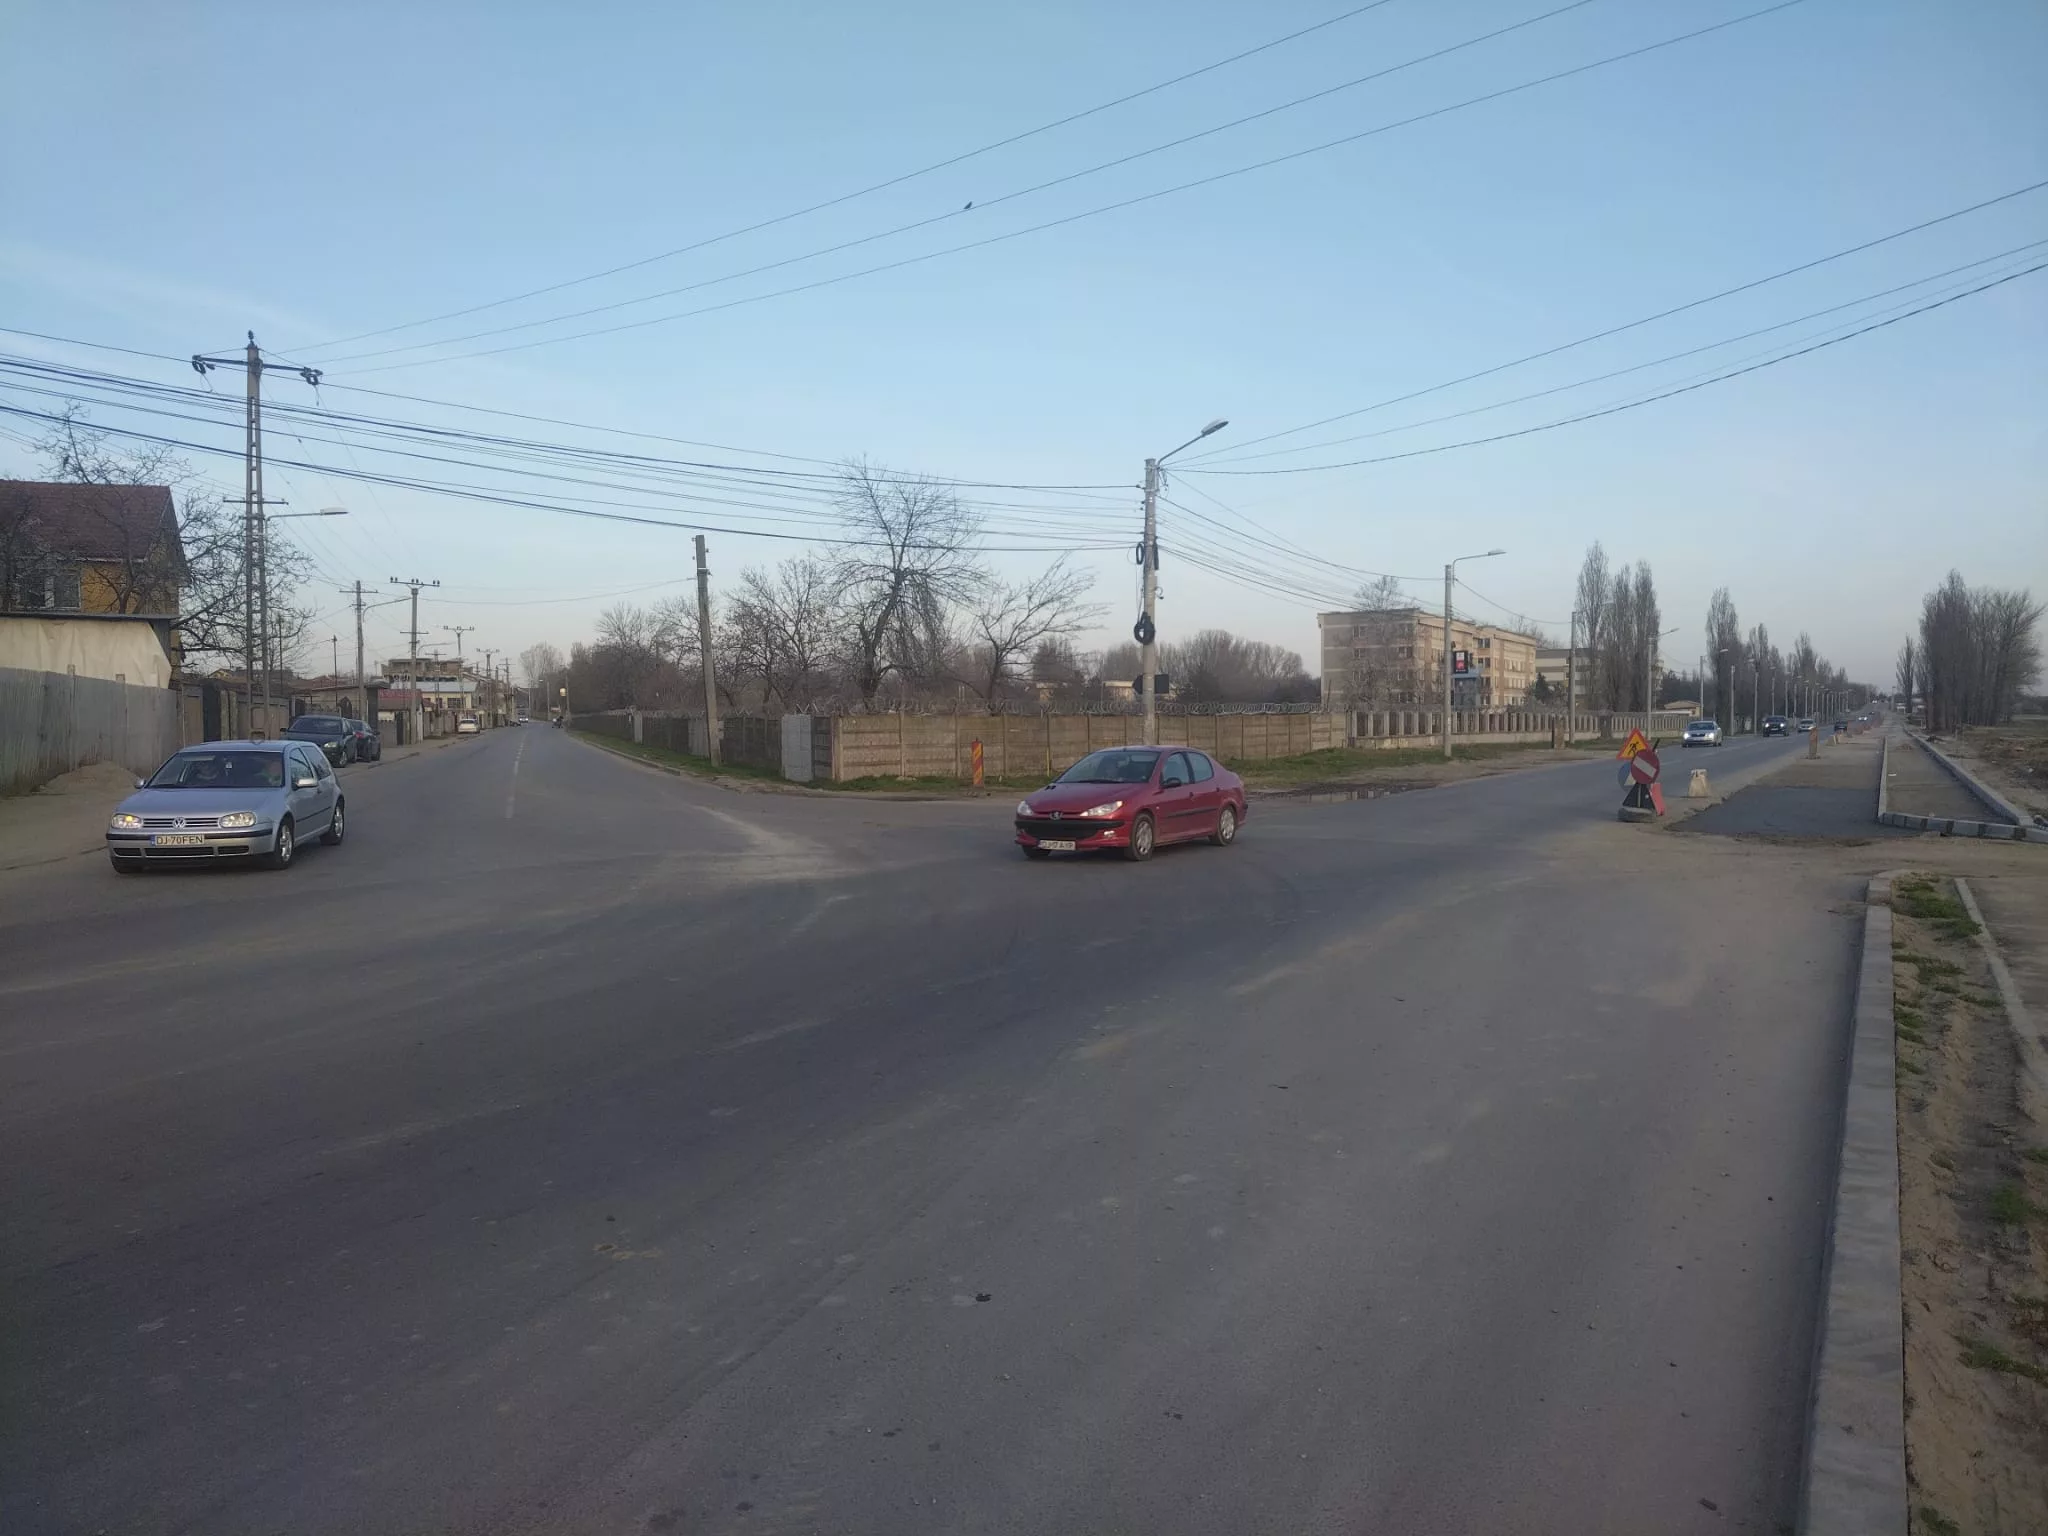 Comisia de sistematizare a circulaţiei a avizat favorabil amenajarea unui sens giratoriu provizoriu la intersecţia străzii Nicolae Romanescu cu Aleea 2 Bechetului